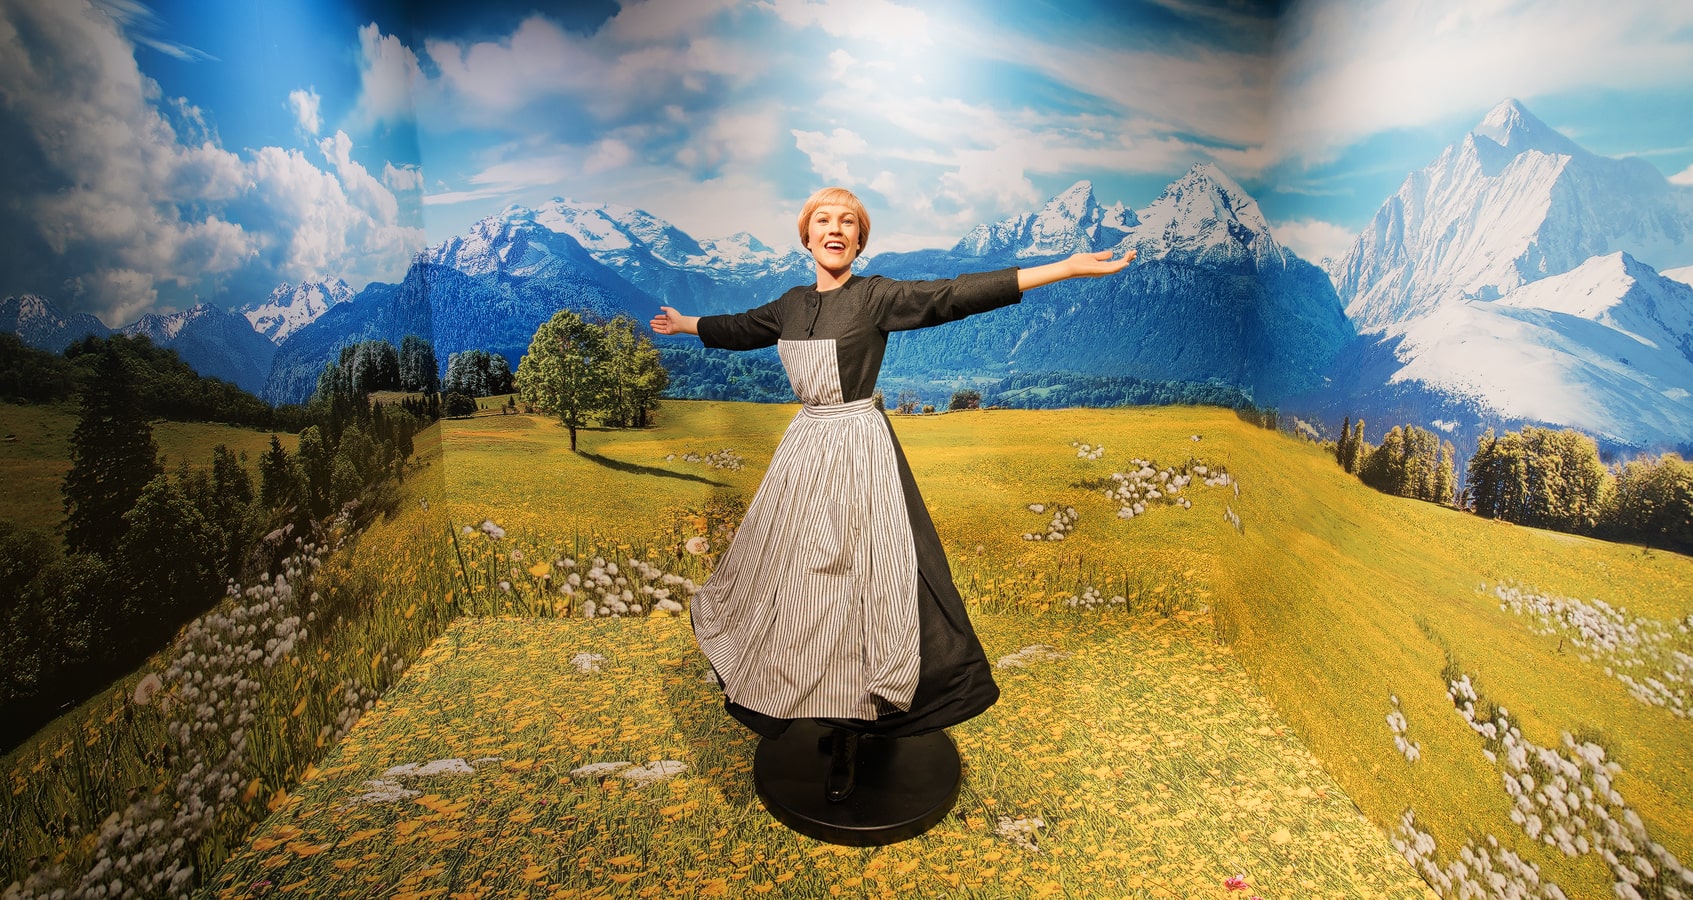 Julie Andrews' wax figure at Madame Tussauds Vienna